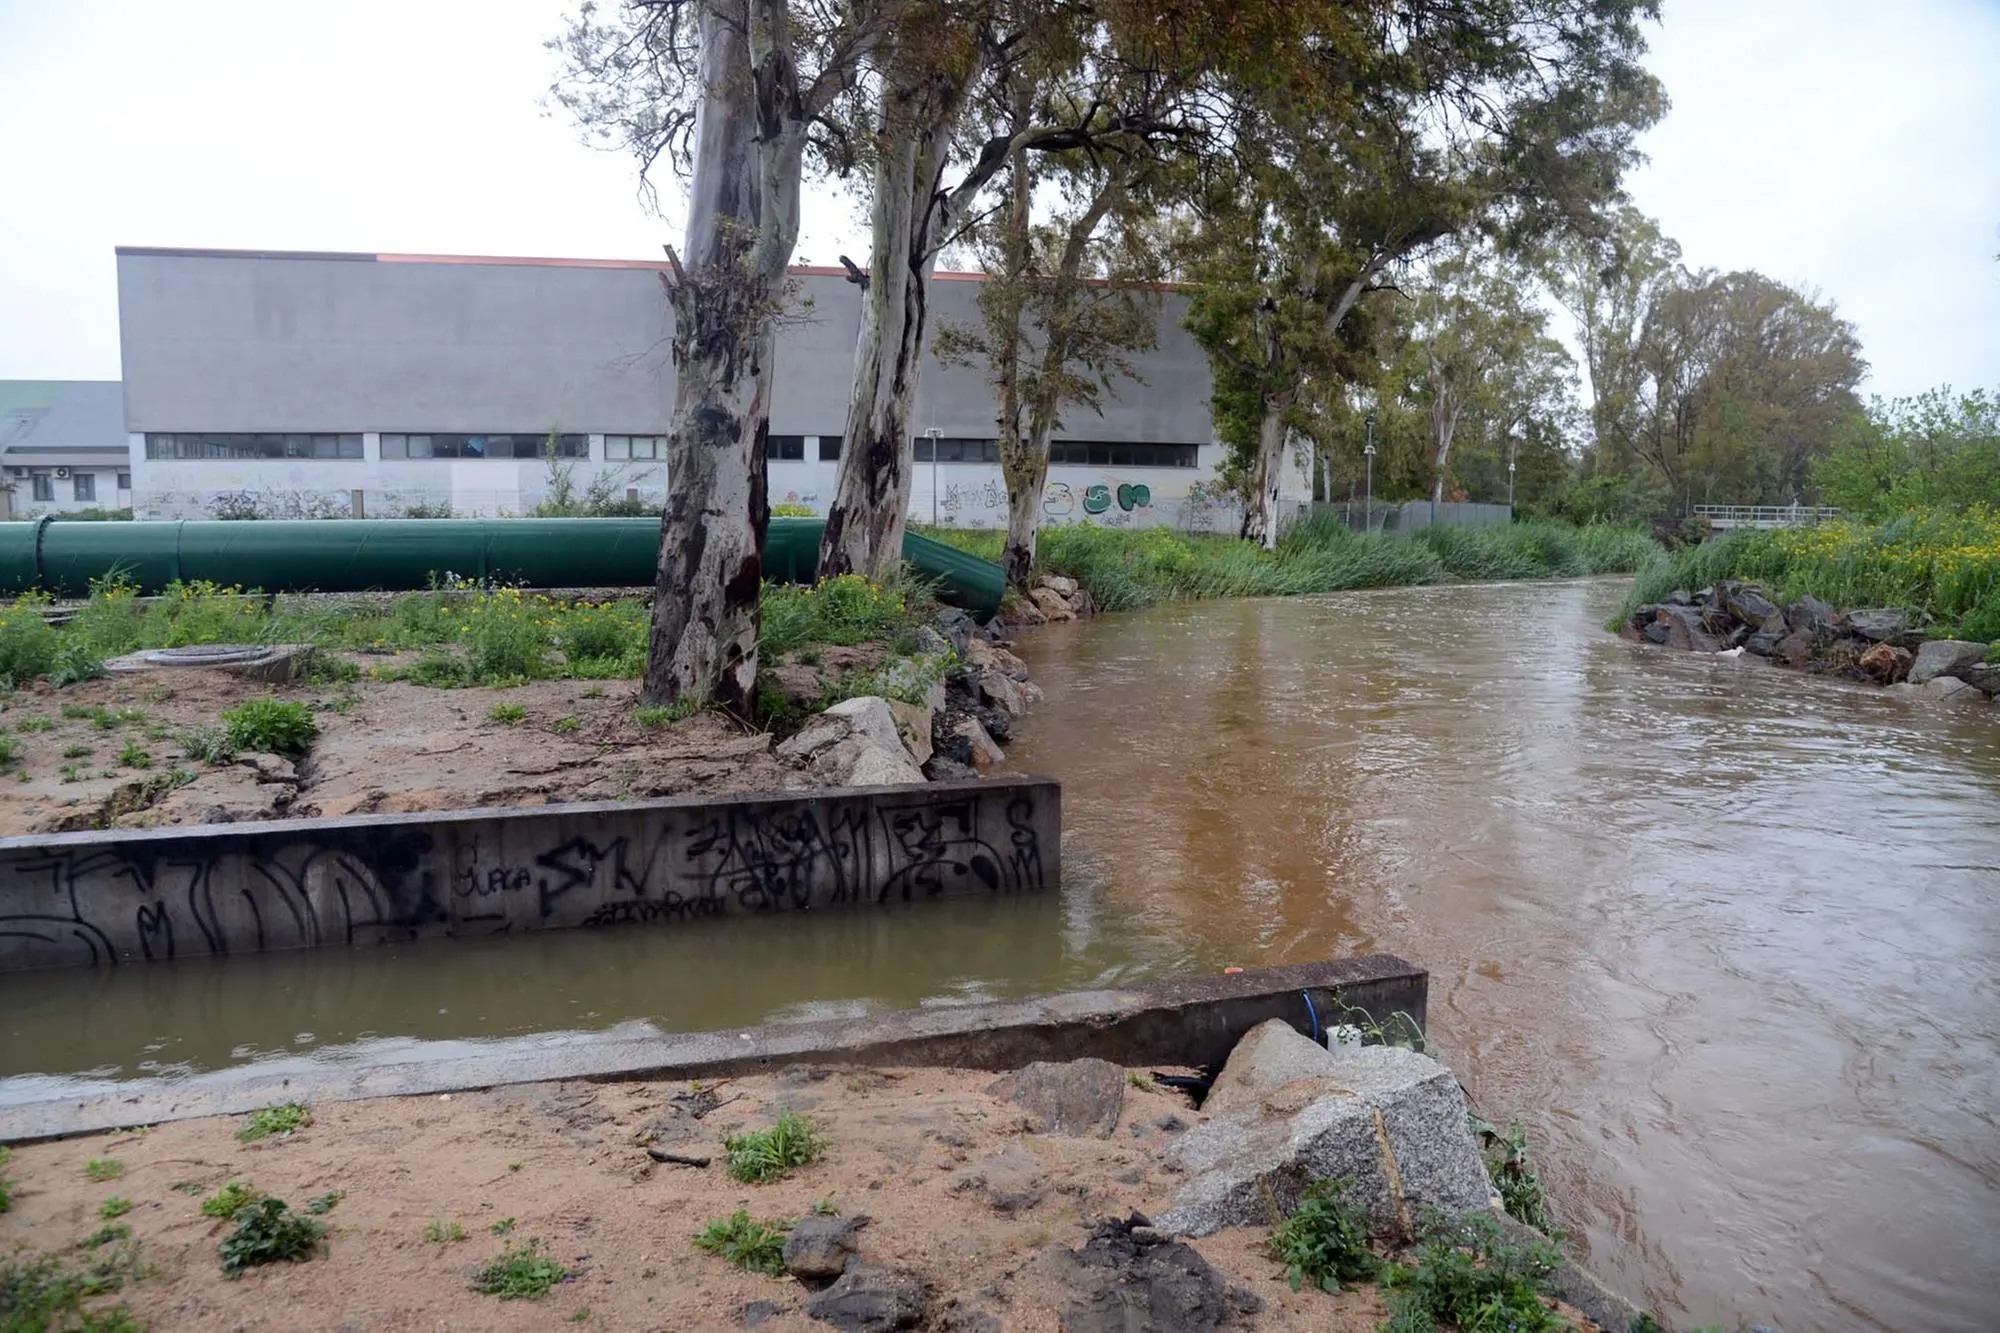 L'istituto Ipia vicino al rio Seligheddu, zona ad alto rischio idrogeologico (Foto Satta)